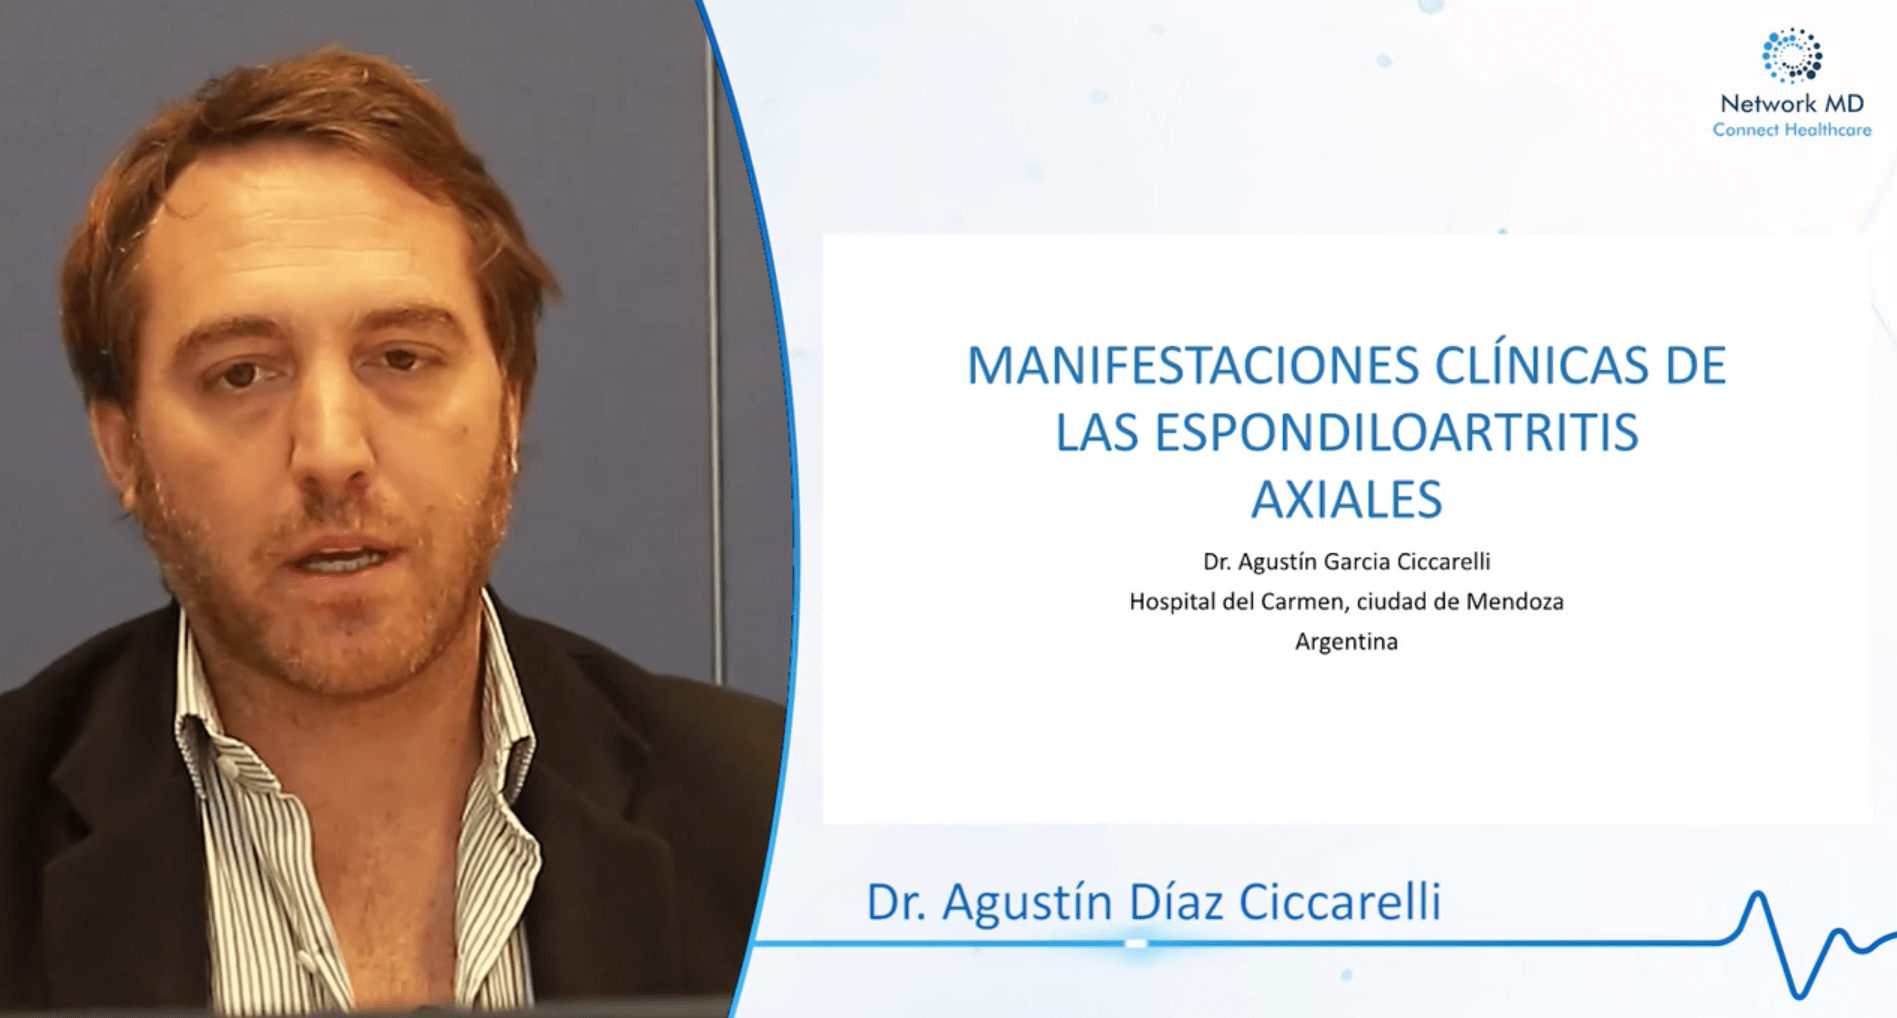 Video: Manifestaciones Clinicas de las Espondilitis Axiales. (CME)